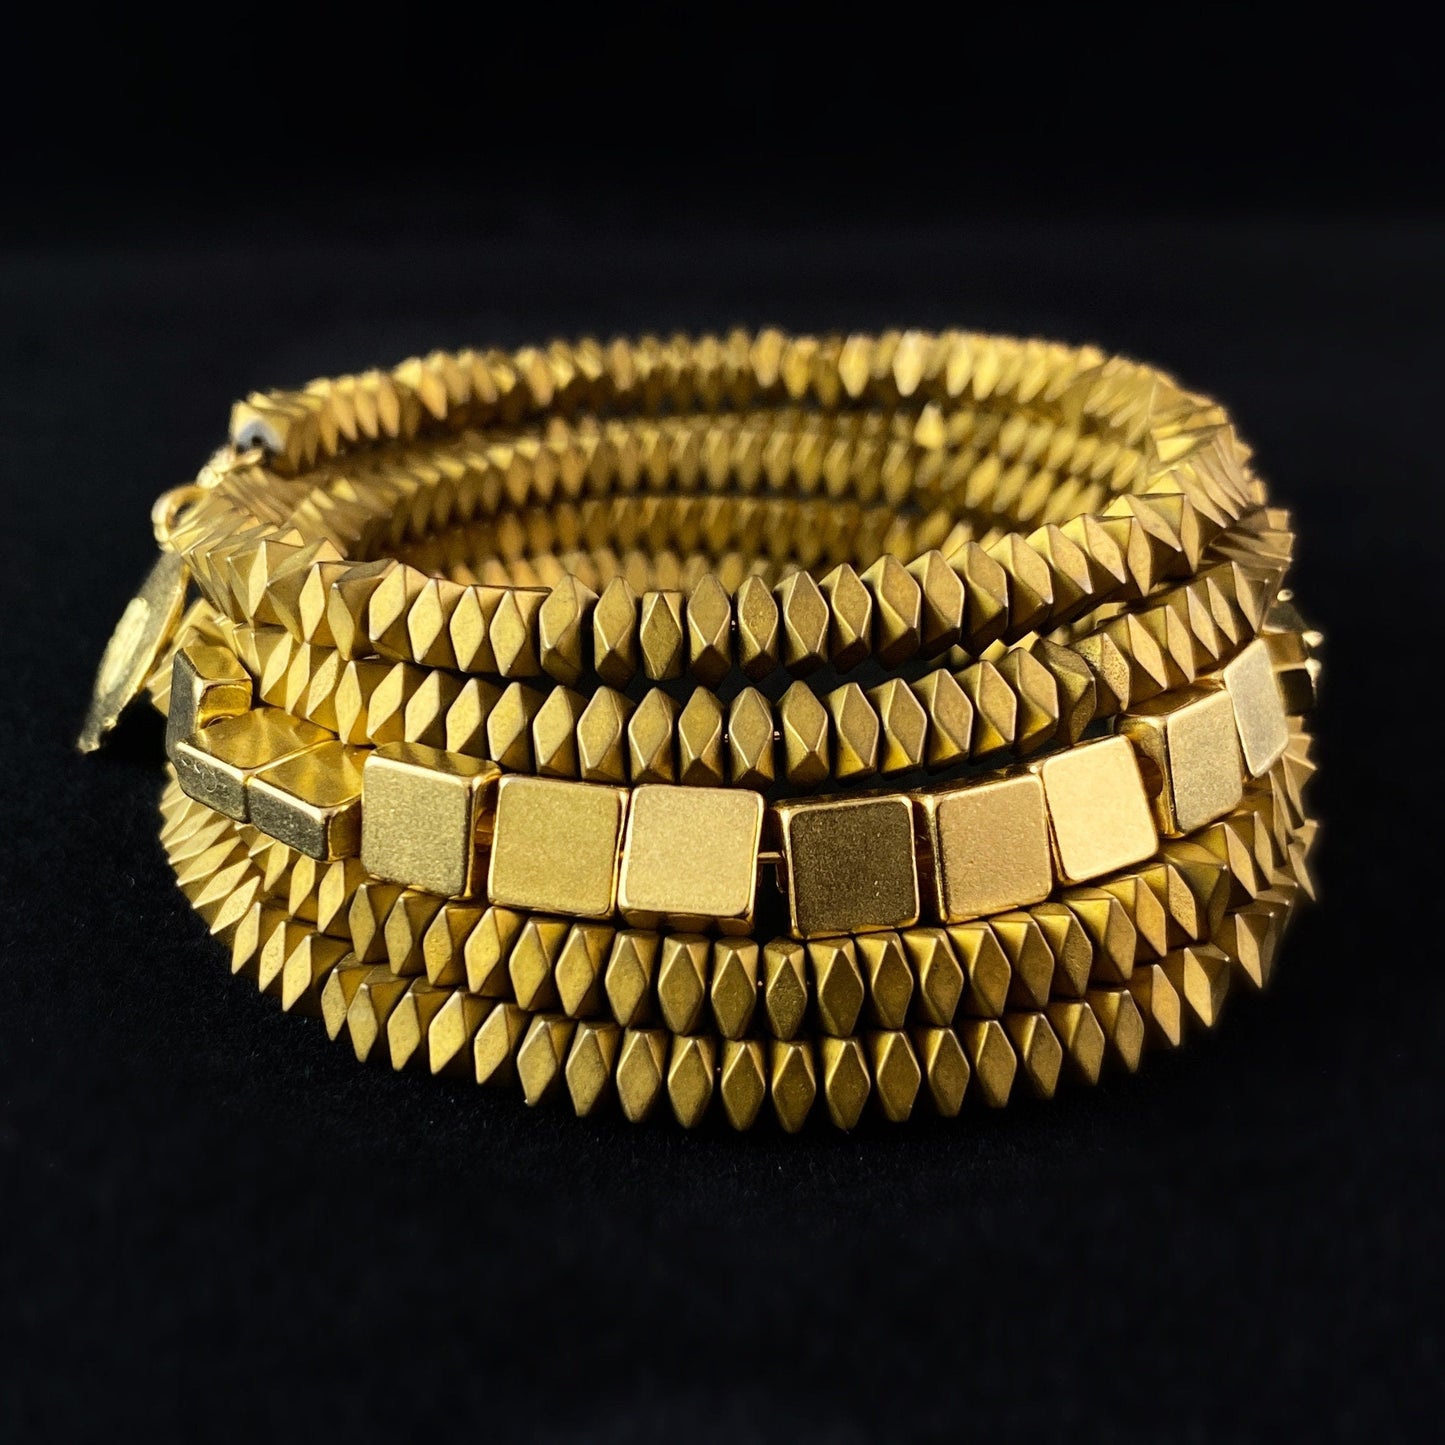 Gold Hematite Wrap Bracelet - Geometric Art Deco Style - David Aubrey Jewelry